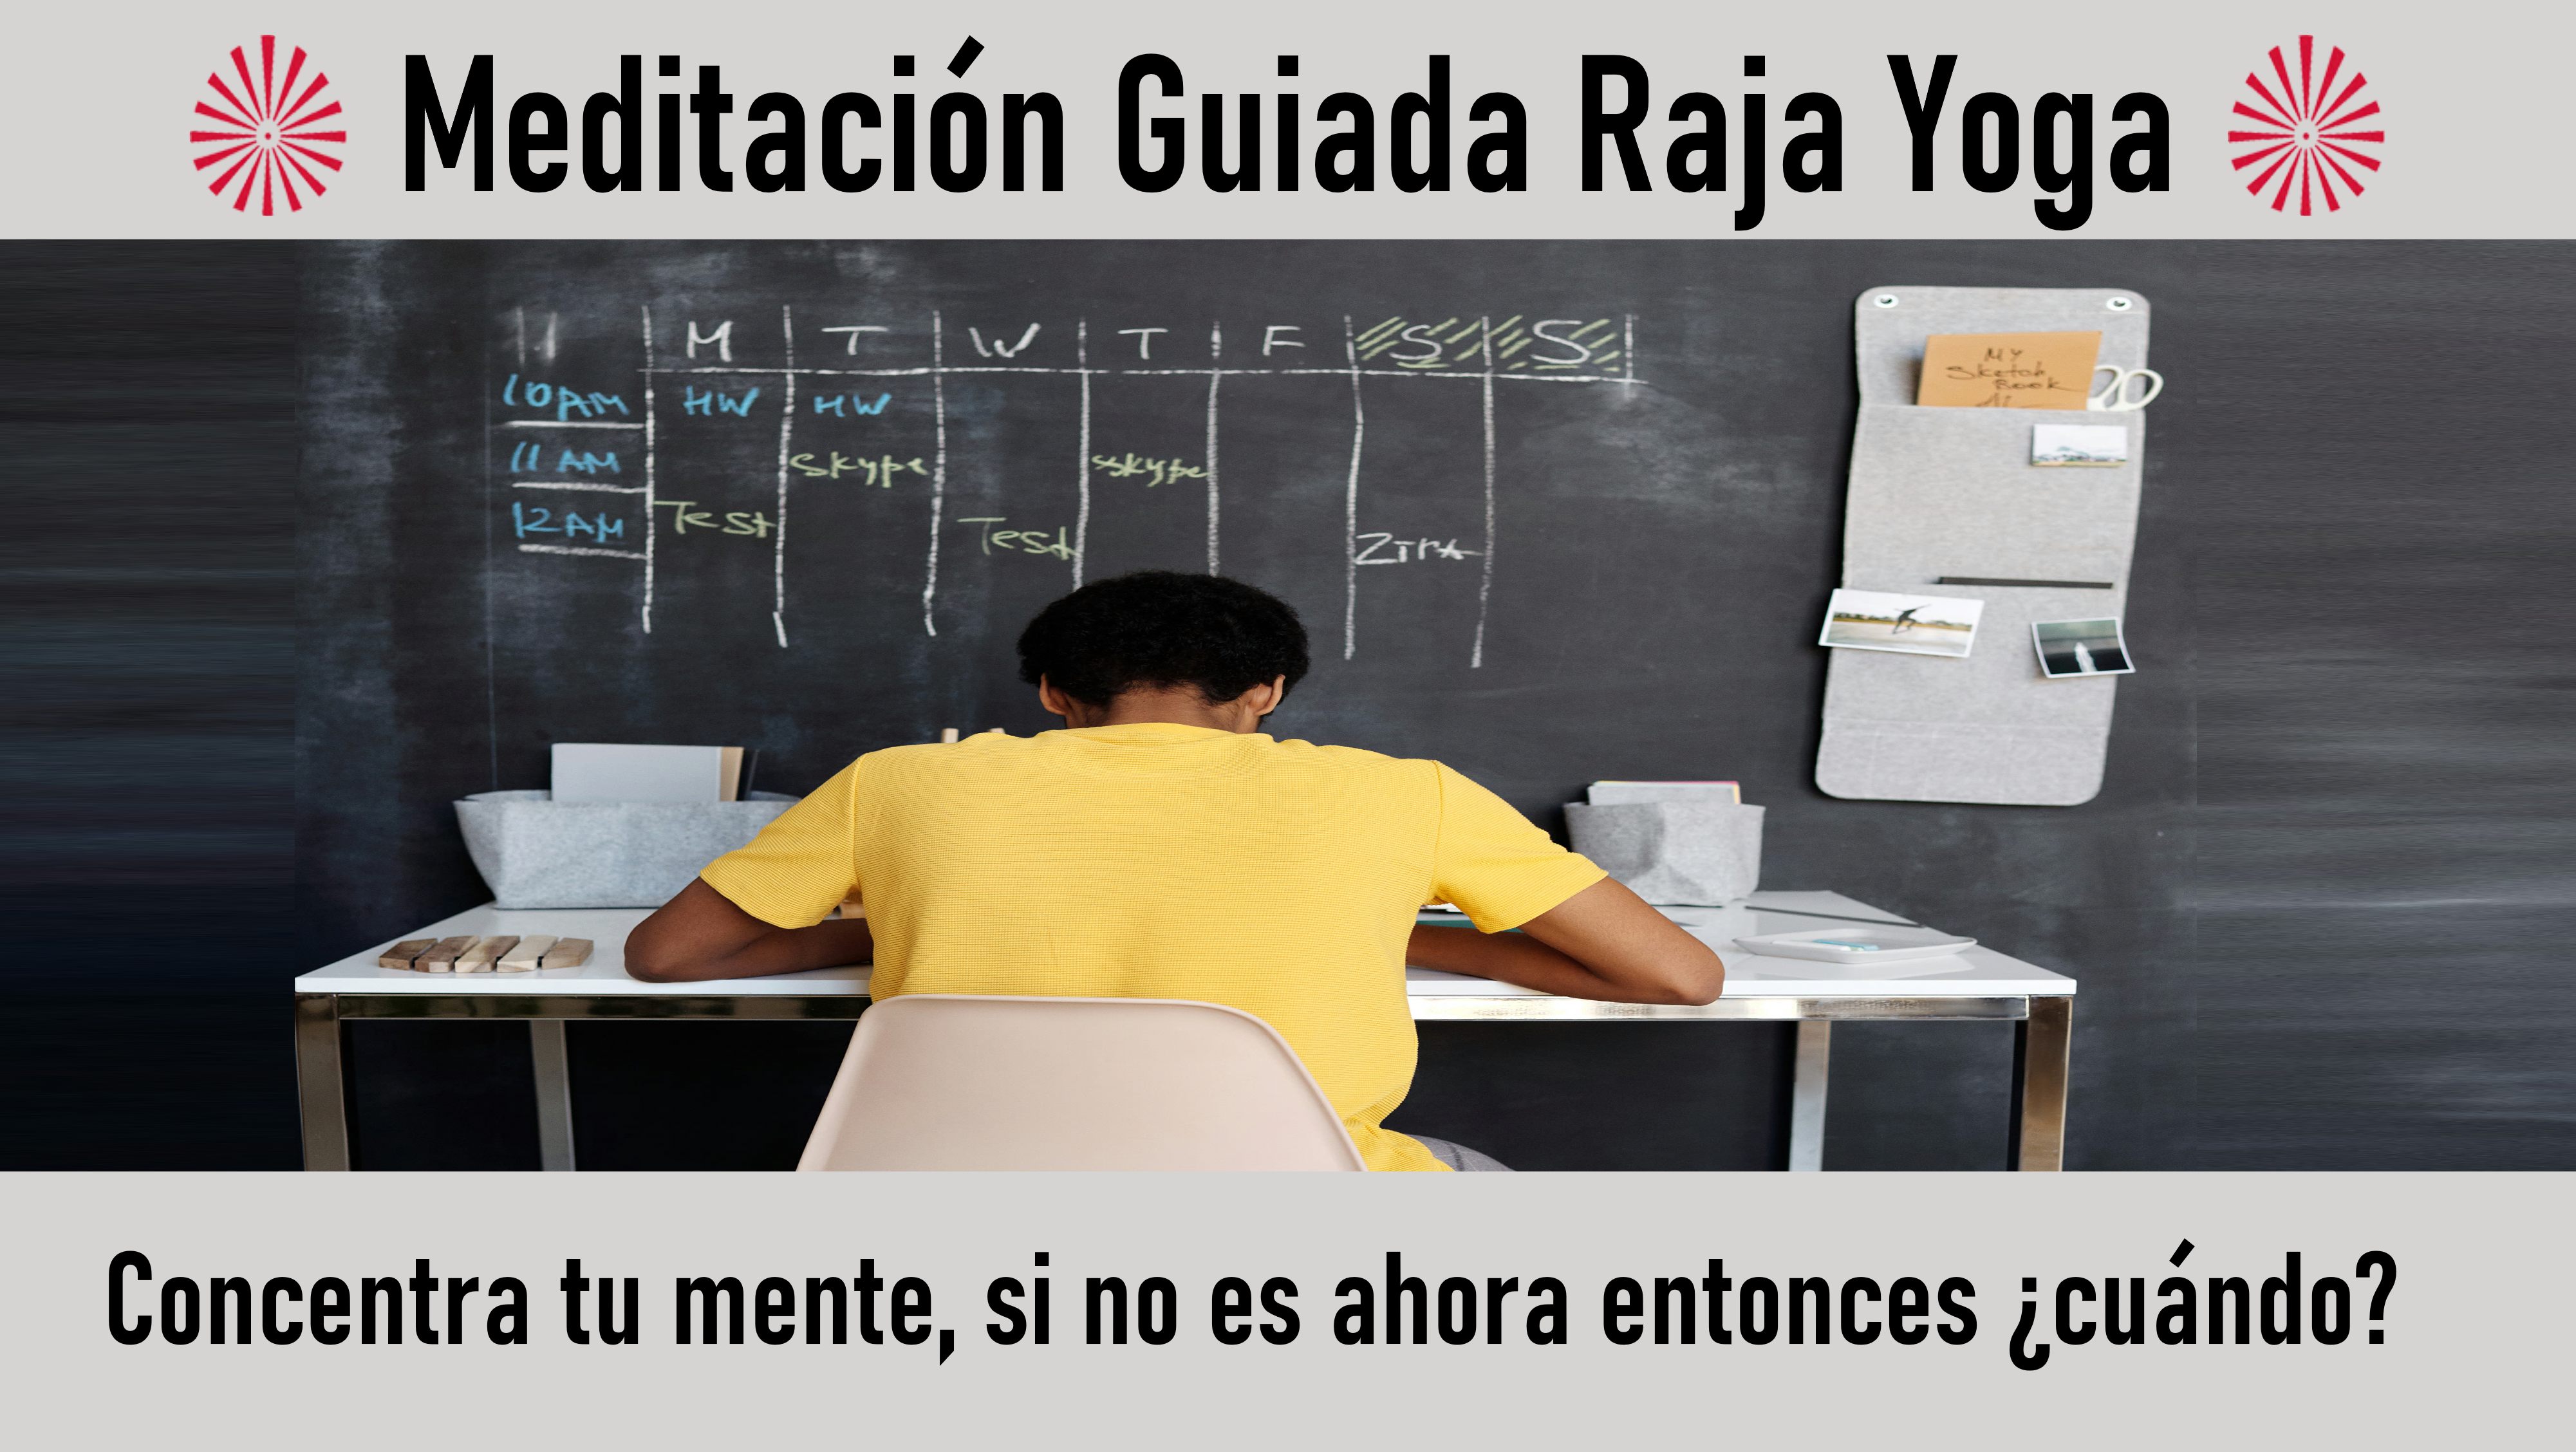 Meditación Raja Yoga: Concentra tu mente, si no es ahora entonces ¿cuándo? (5 Octubre 2020) On-line desde Madrid